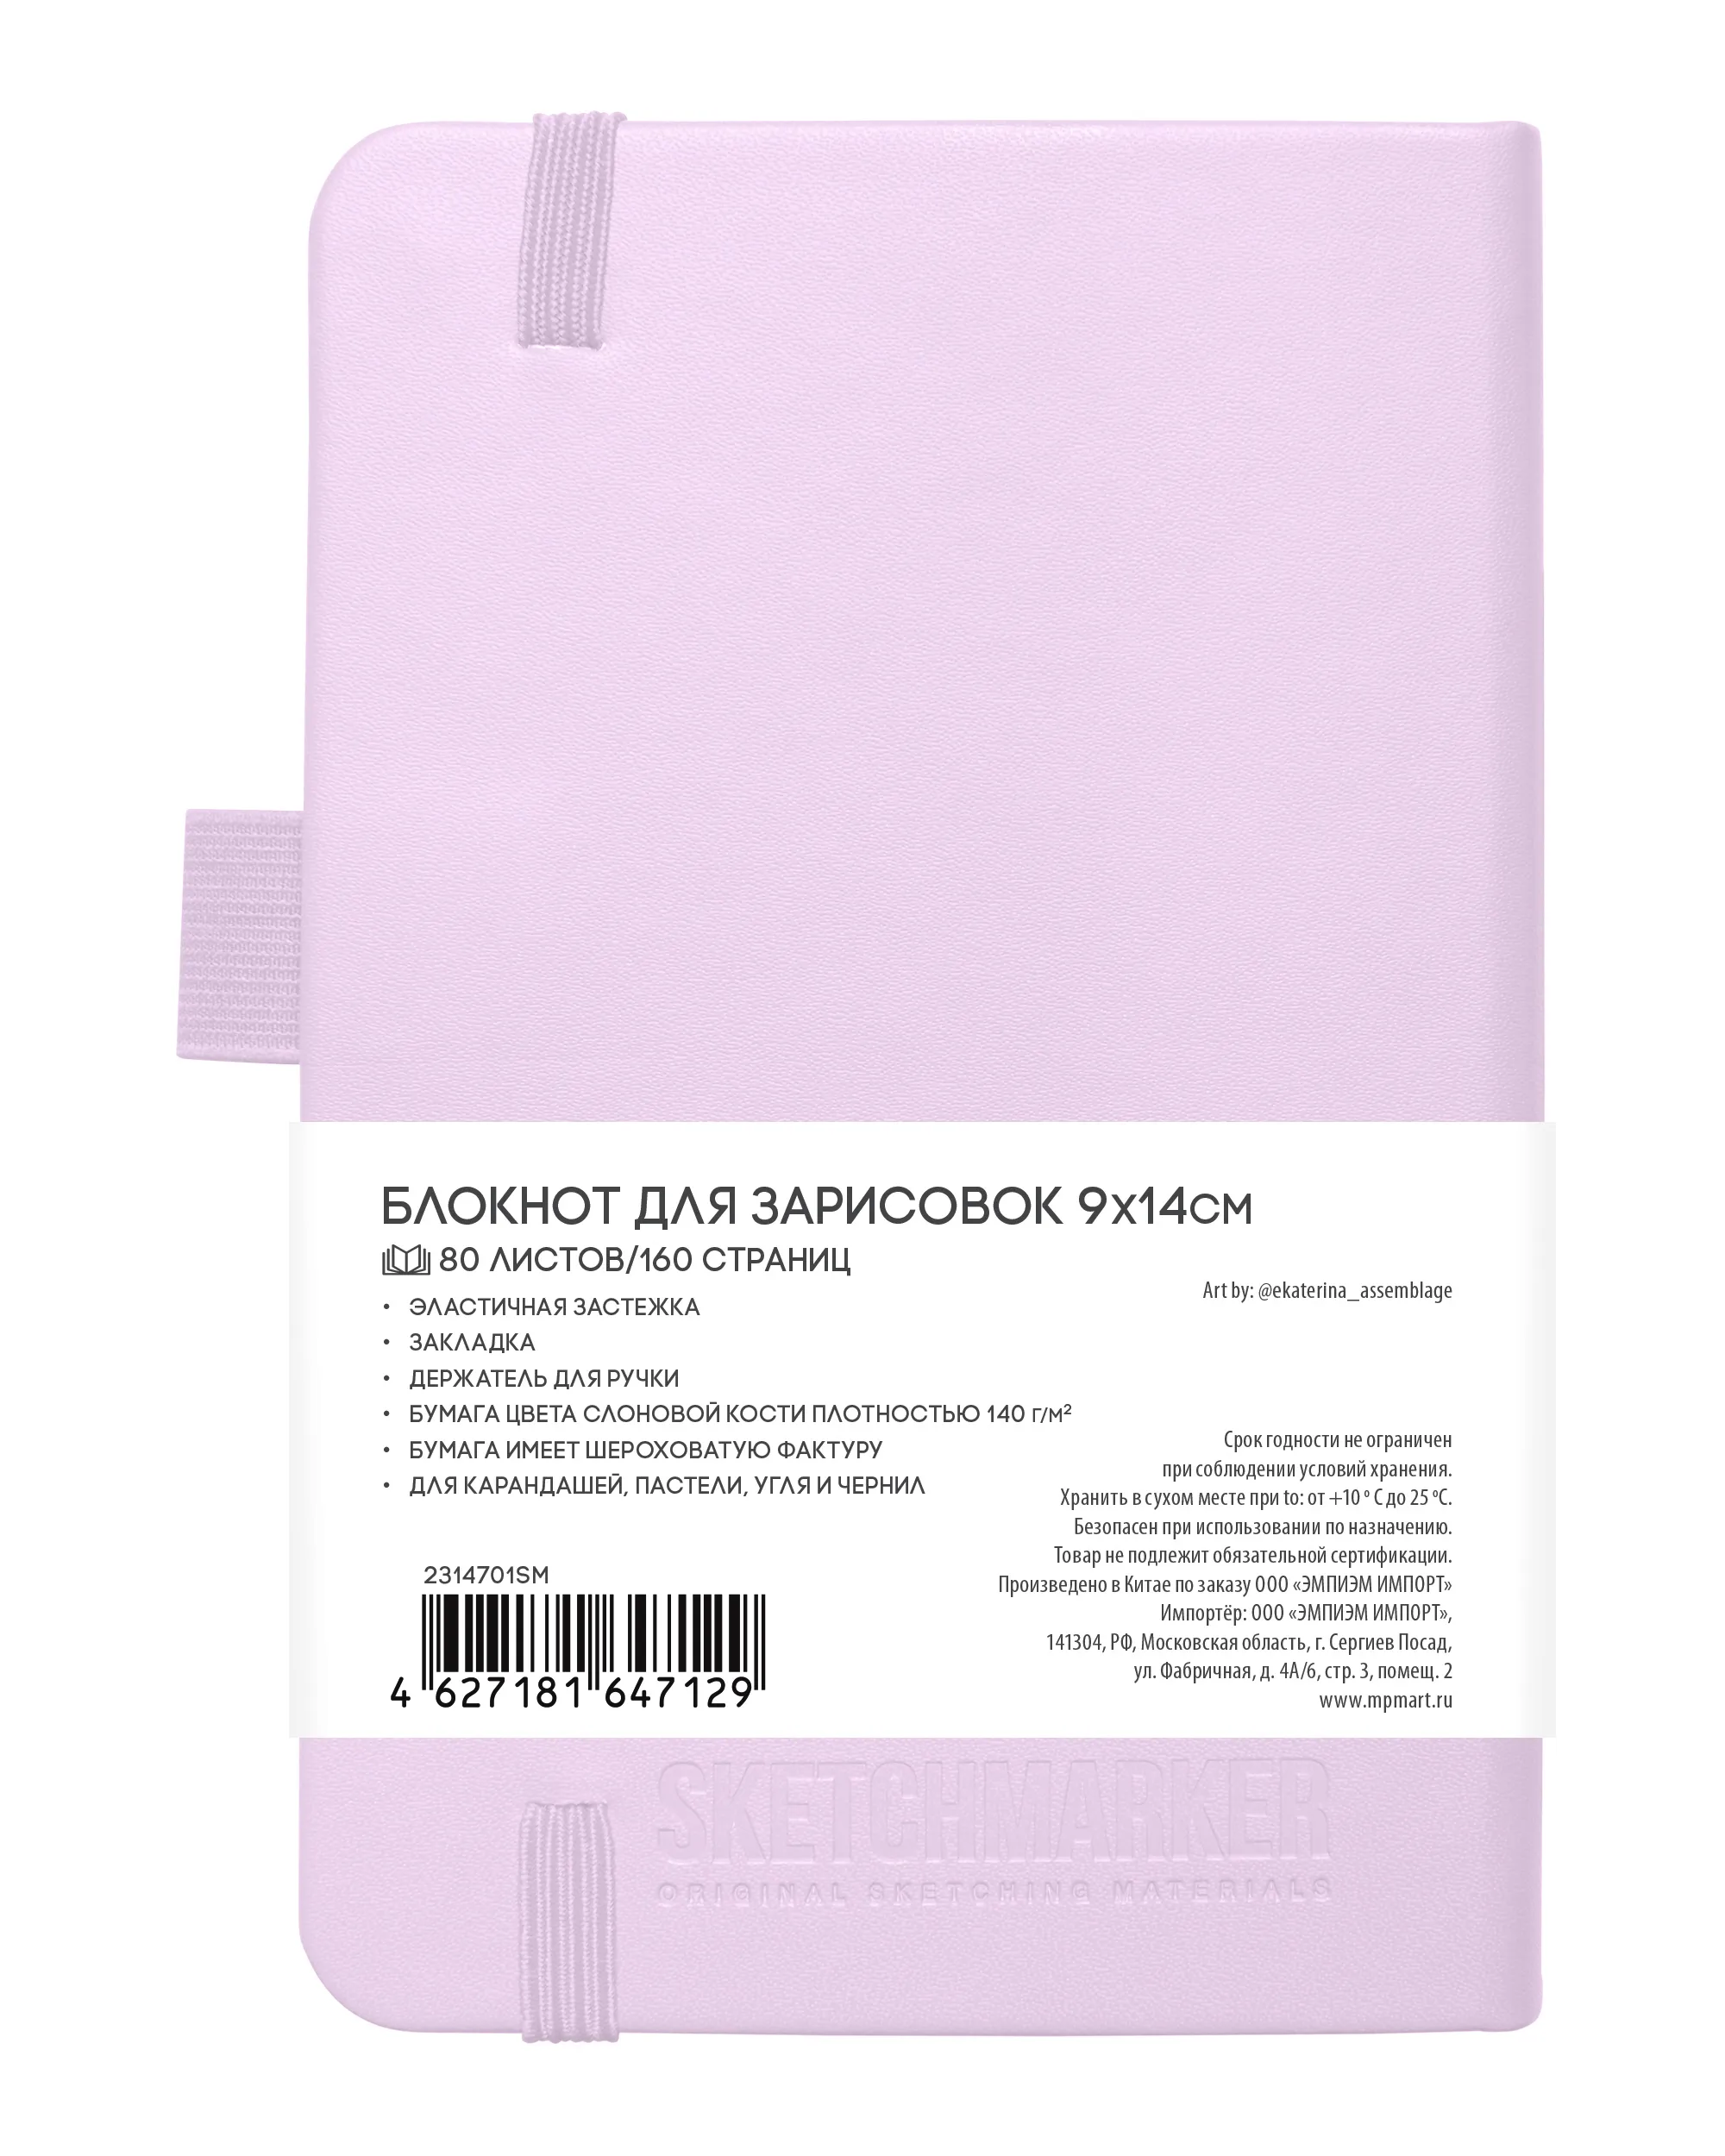 Блокнот для зарисовок Sketchmarker 140г/кв.м 9*14см 80л (Фиолетовый пастельный)